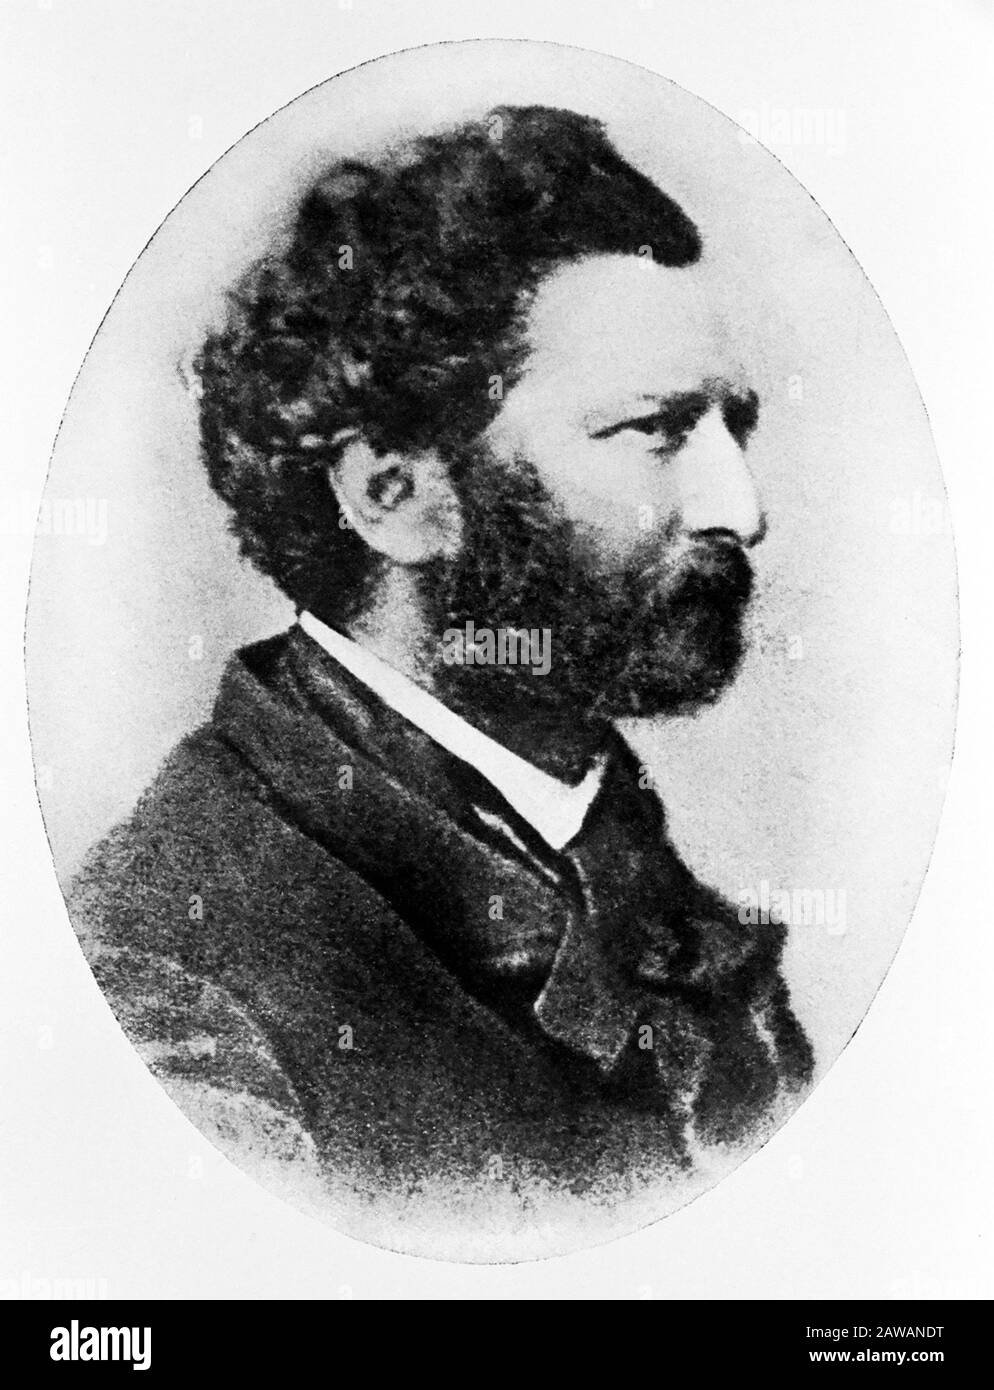 1860 Ca, ITALIEN: Der gefeierte italienische Musikkomponist und Patriot MICHELE NOVARO (* um 186; † 1885), Autor der nationalen italienischen Antem FRATELLI D'ITALIA Stockfoto